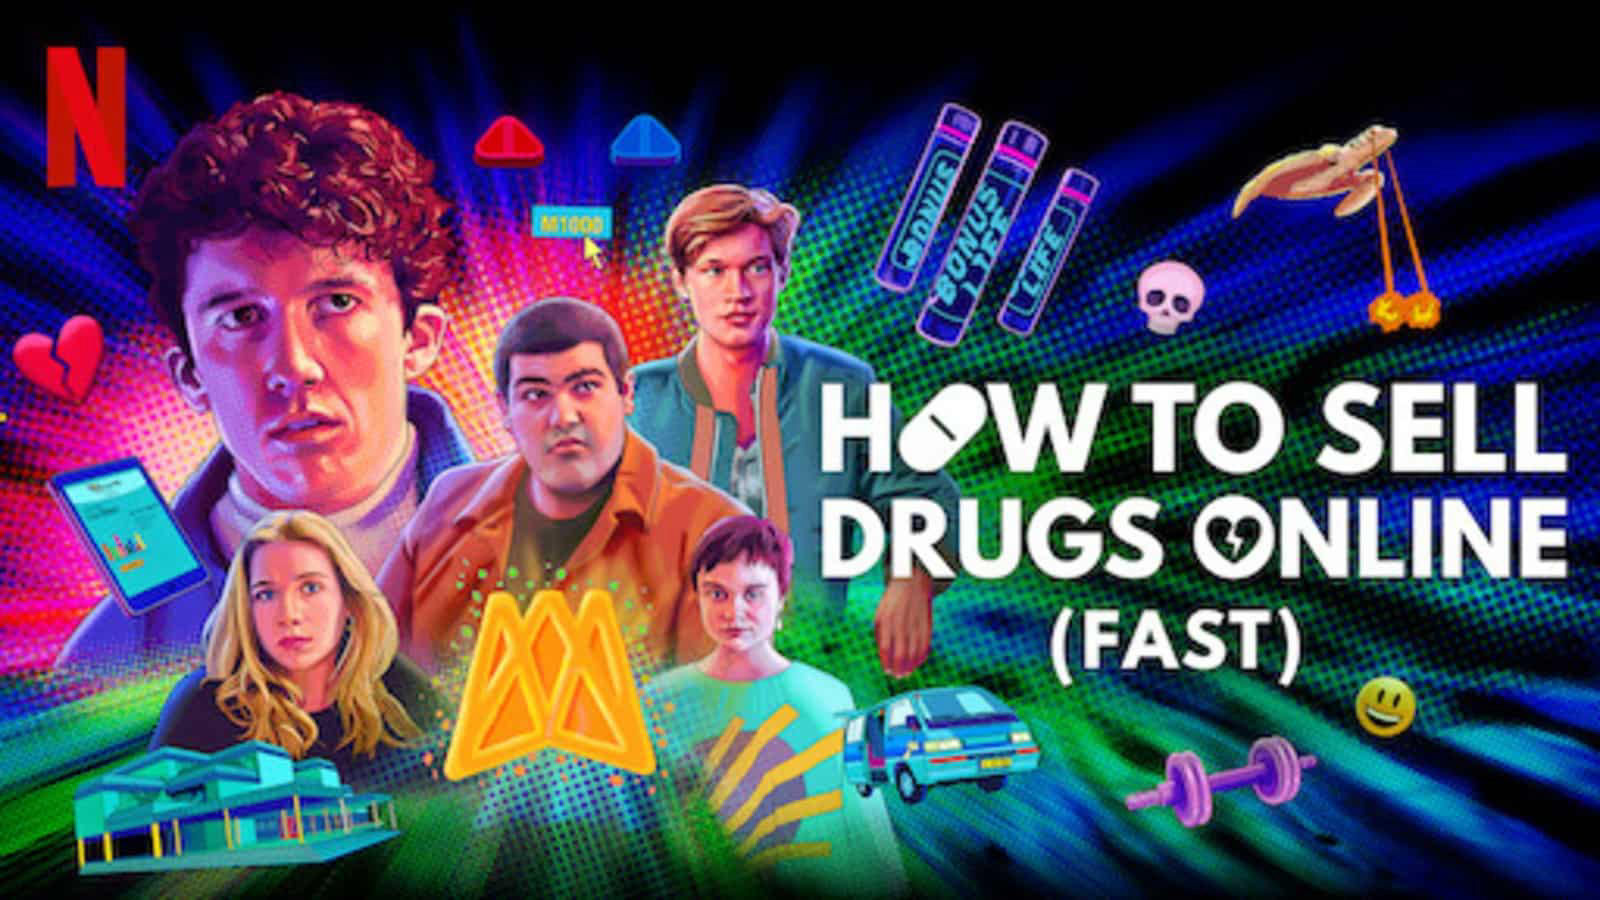 Cách buôn thuốc trên mạng (Nhanh chóng) (Phần 3) - How to Sell Drugs Online (Fast) (Season 3) (2019)